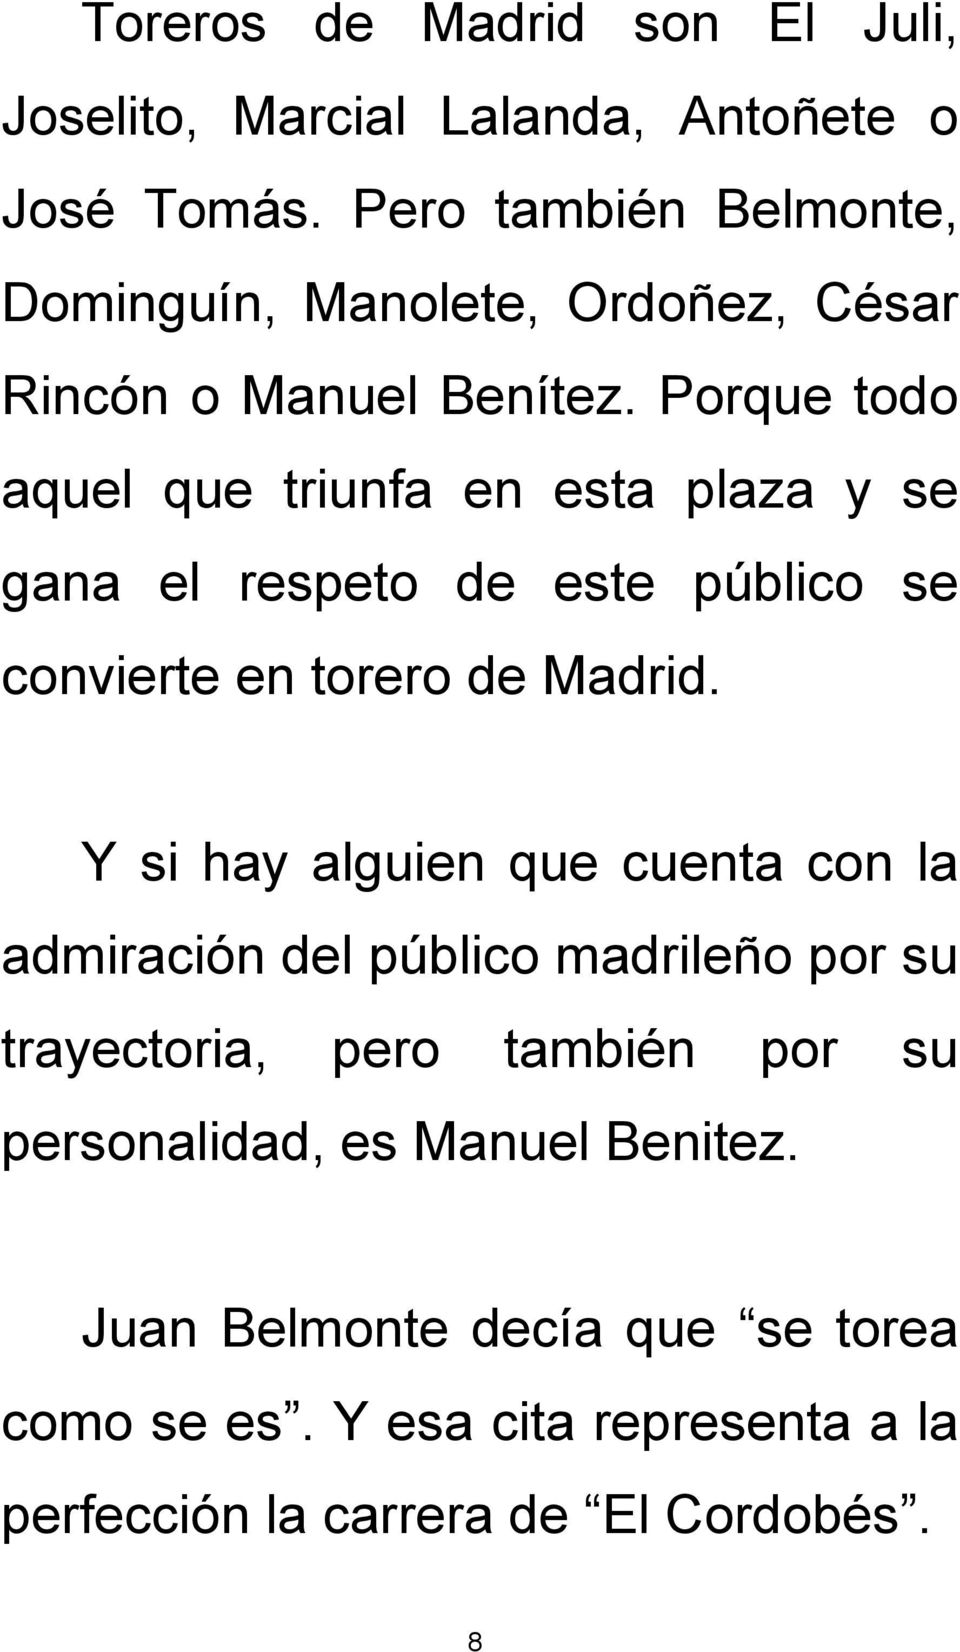 Porque todo aquel que triunfa en esta plaza y se gana el respeto de este público se convierte en torero de Madrid.